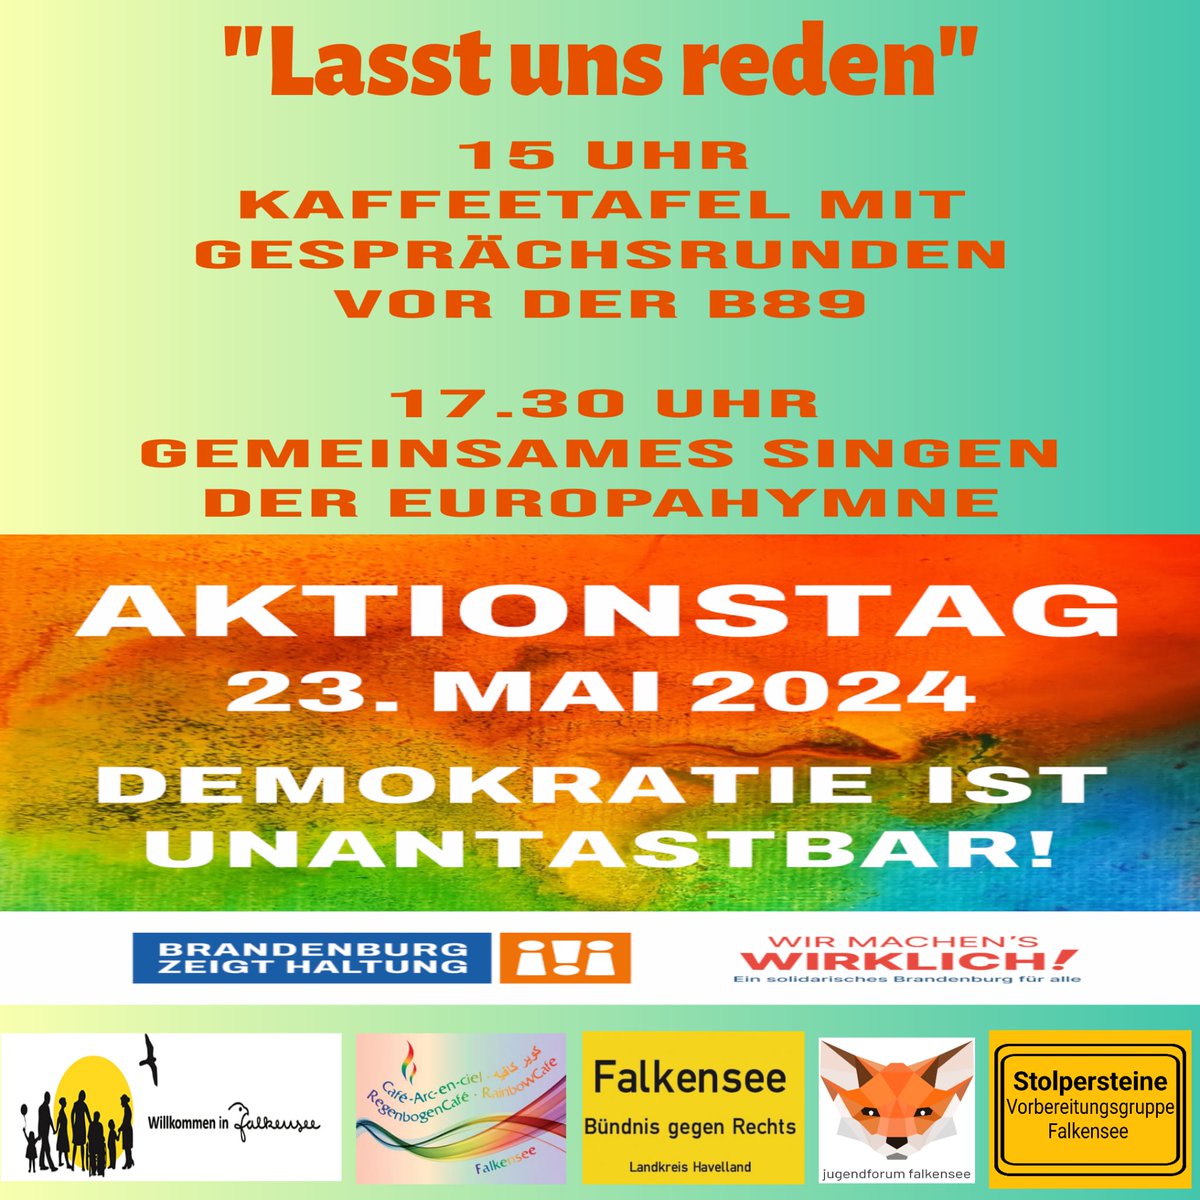 Morgen findet eine Veranstaltung von uns zusammen mit Willkommen in Falkensee, Bündnis gegen Rechts, Jugendforum und der Stolpersteingruppe statt.
Wir schließen uns dem landesweiten Aktionstag 'Demokratie ist unantastbar' an.
B89 15 Uhr.
#Falkensee #BrandenburgZeigtHaltung